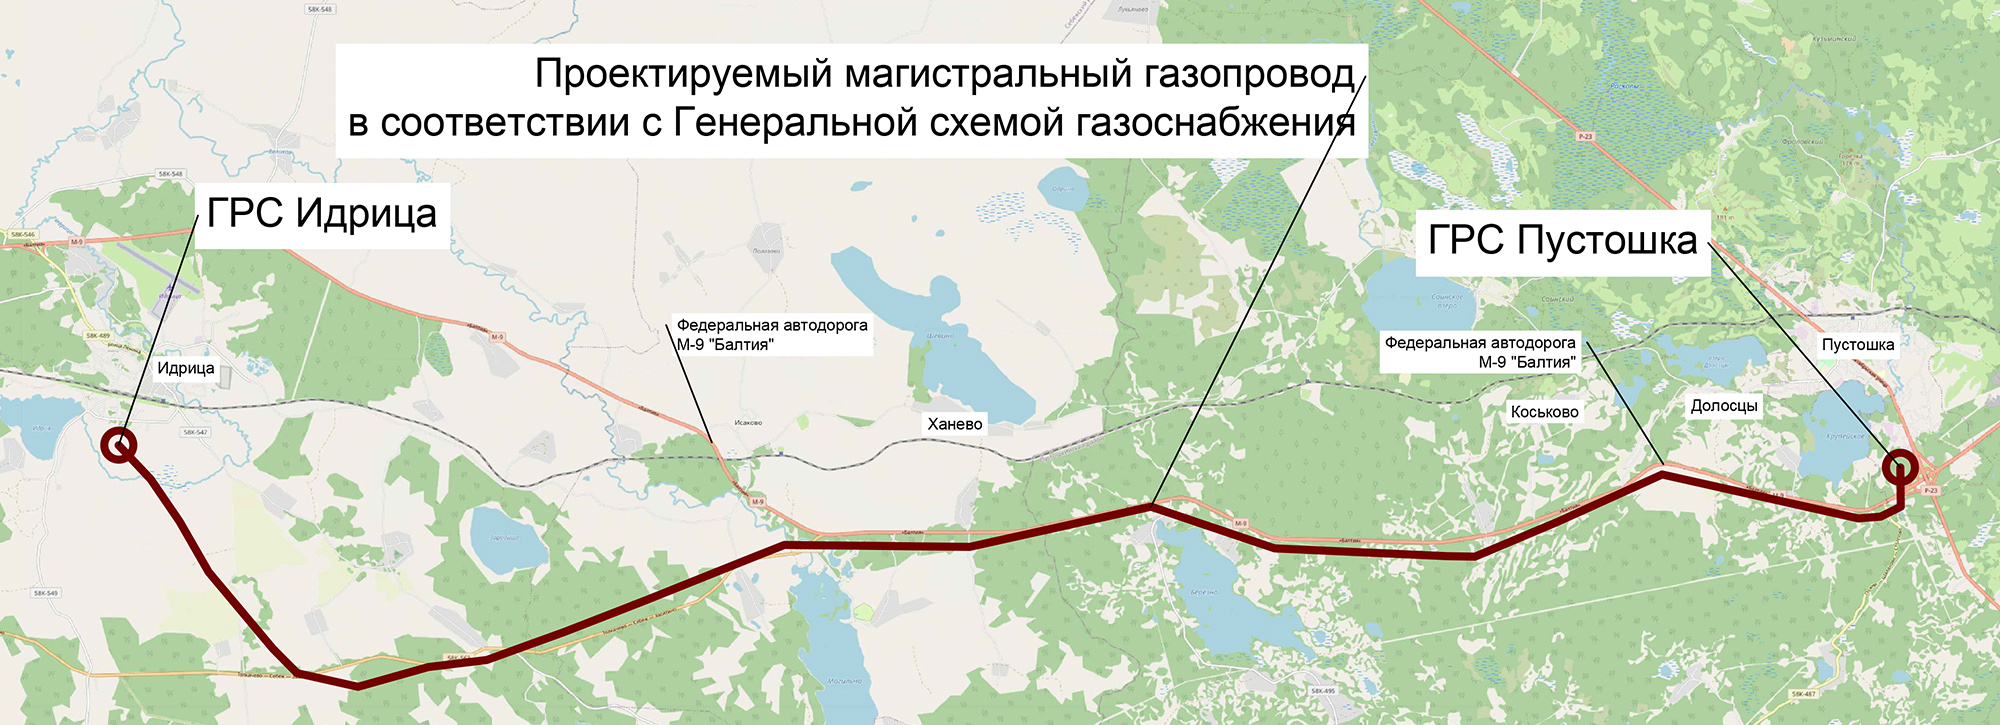 Ситуационный план по проекту «Газопровод-отвод и ГРС Идрица Псковской области»